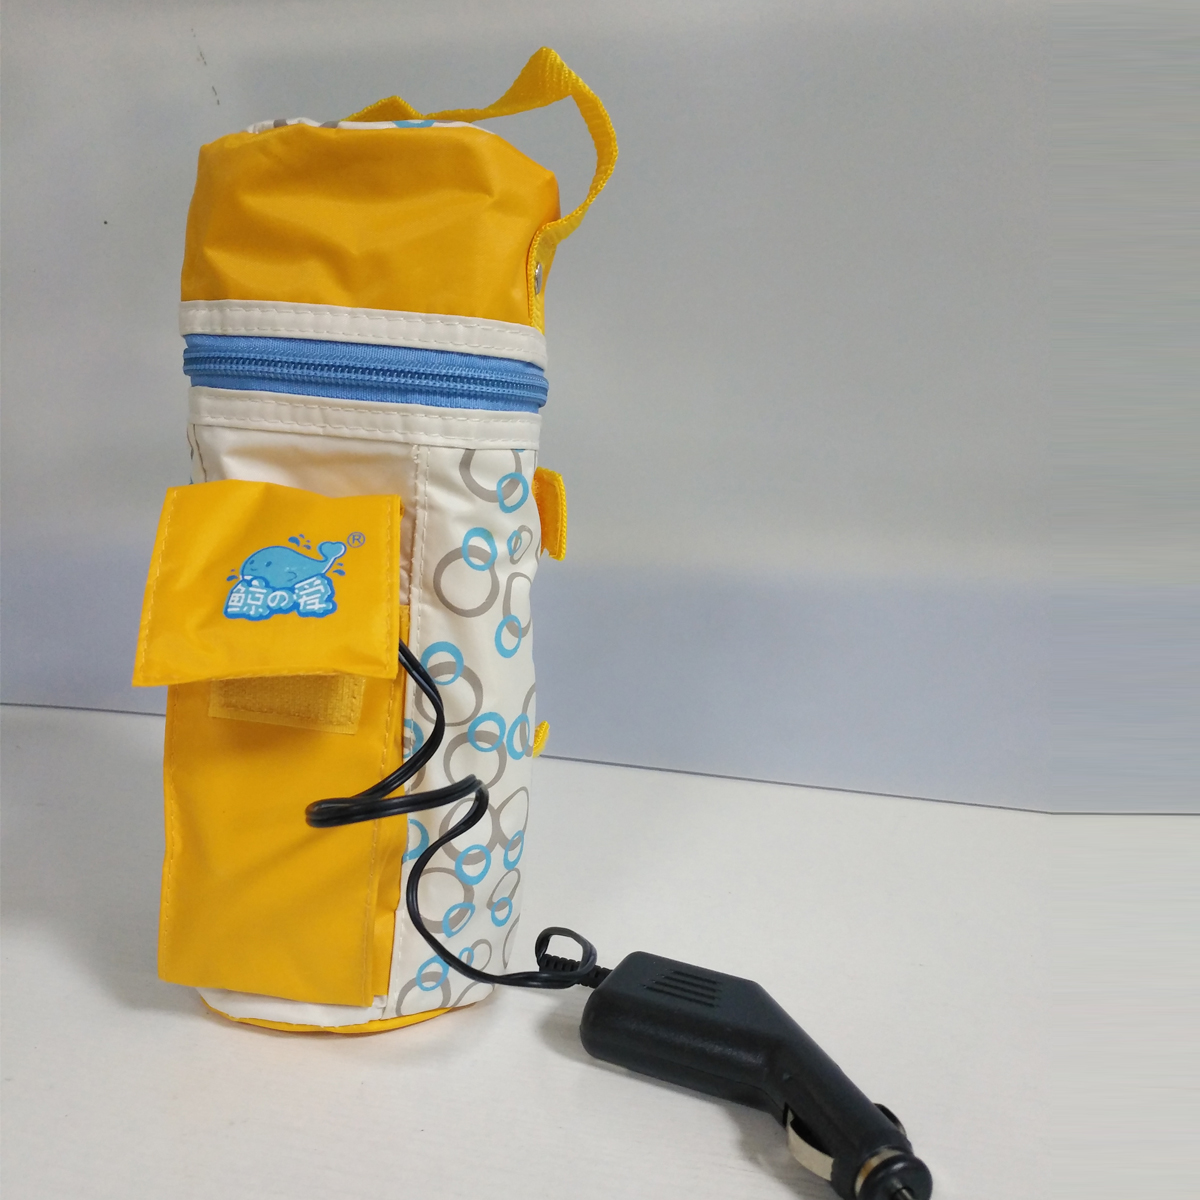 鲸之爱多功能车载暖奶器 智能婴儿温奶器 宝宝奶瓶恒温保温瓶热奶机LS-C001